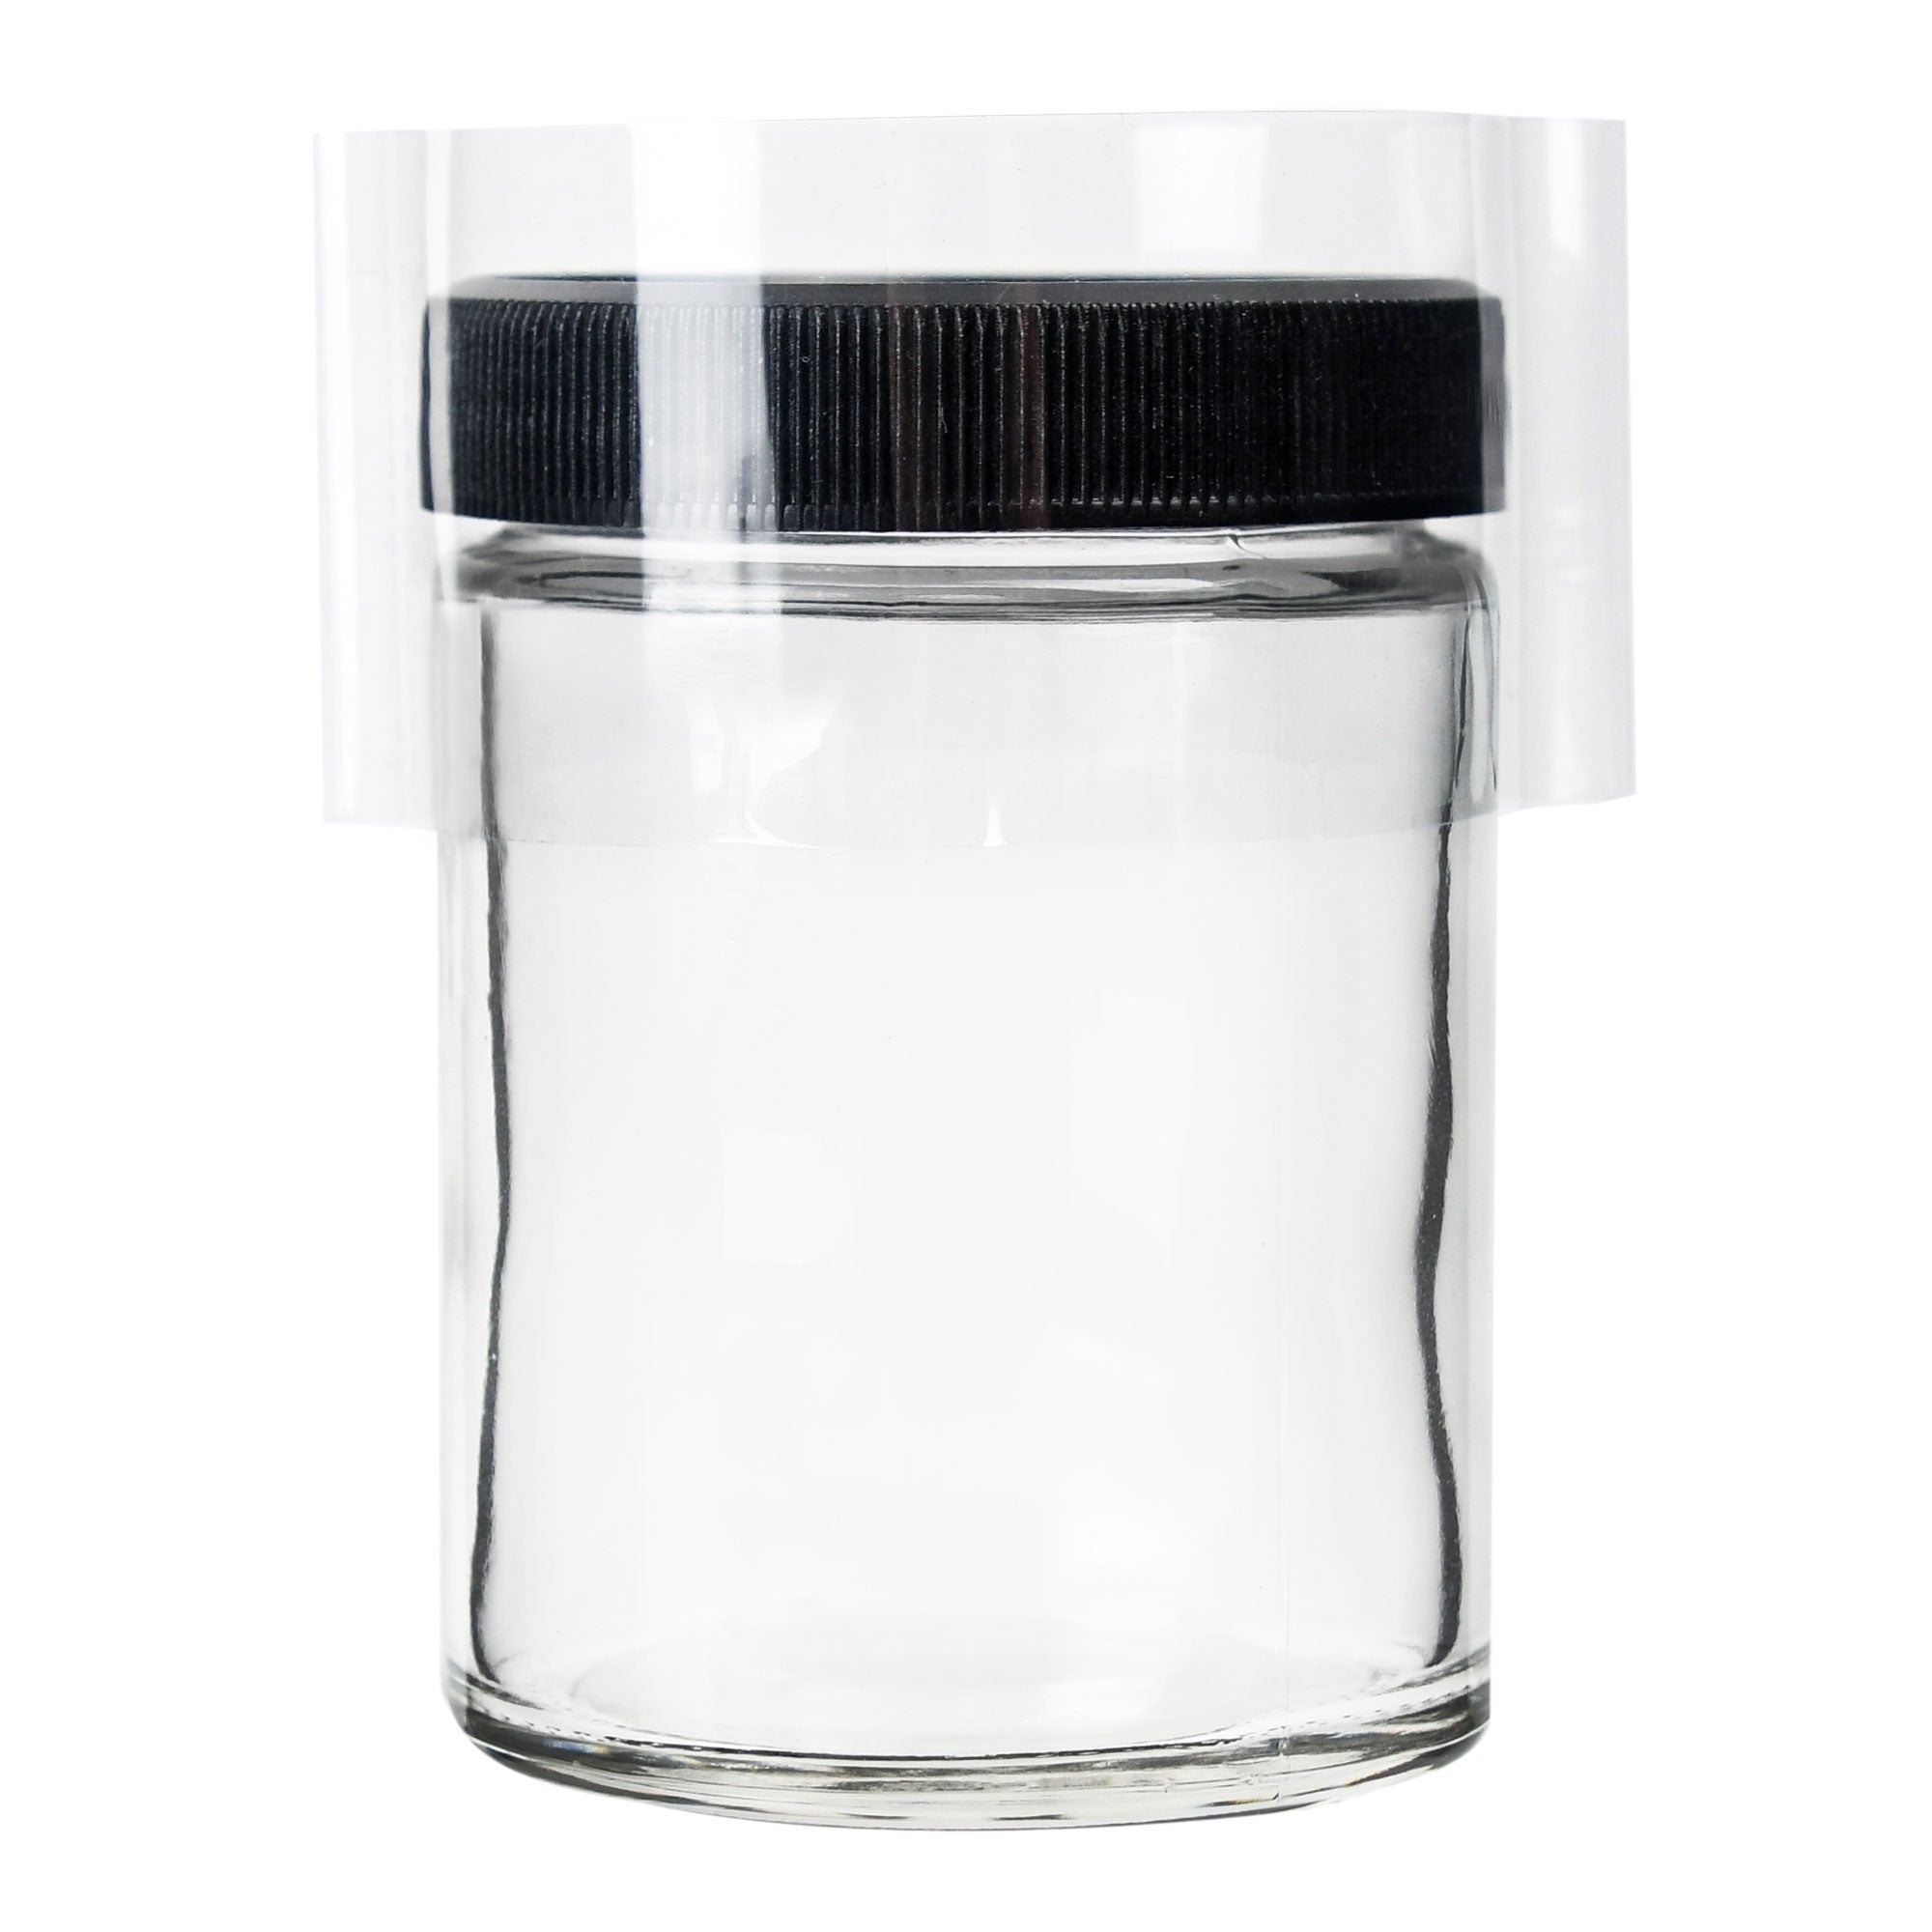 4oz Glass Jar Tamper Evident Shrink Bands - 250 Count